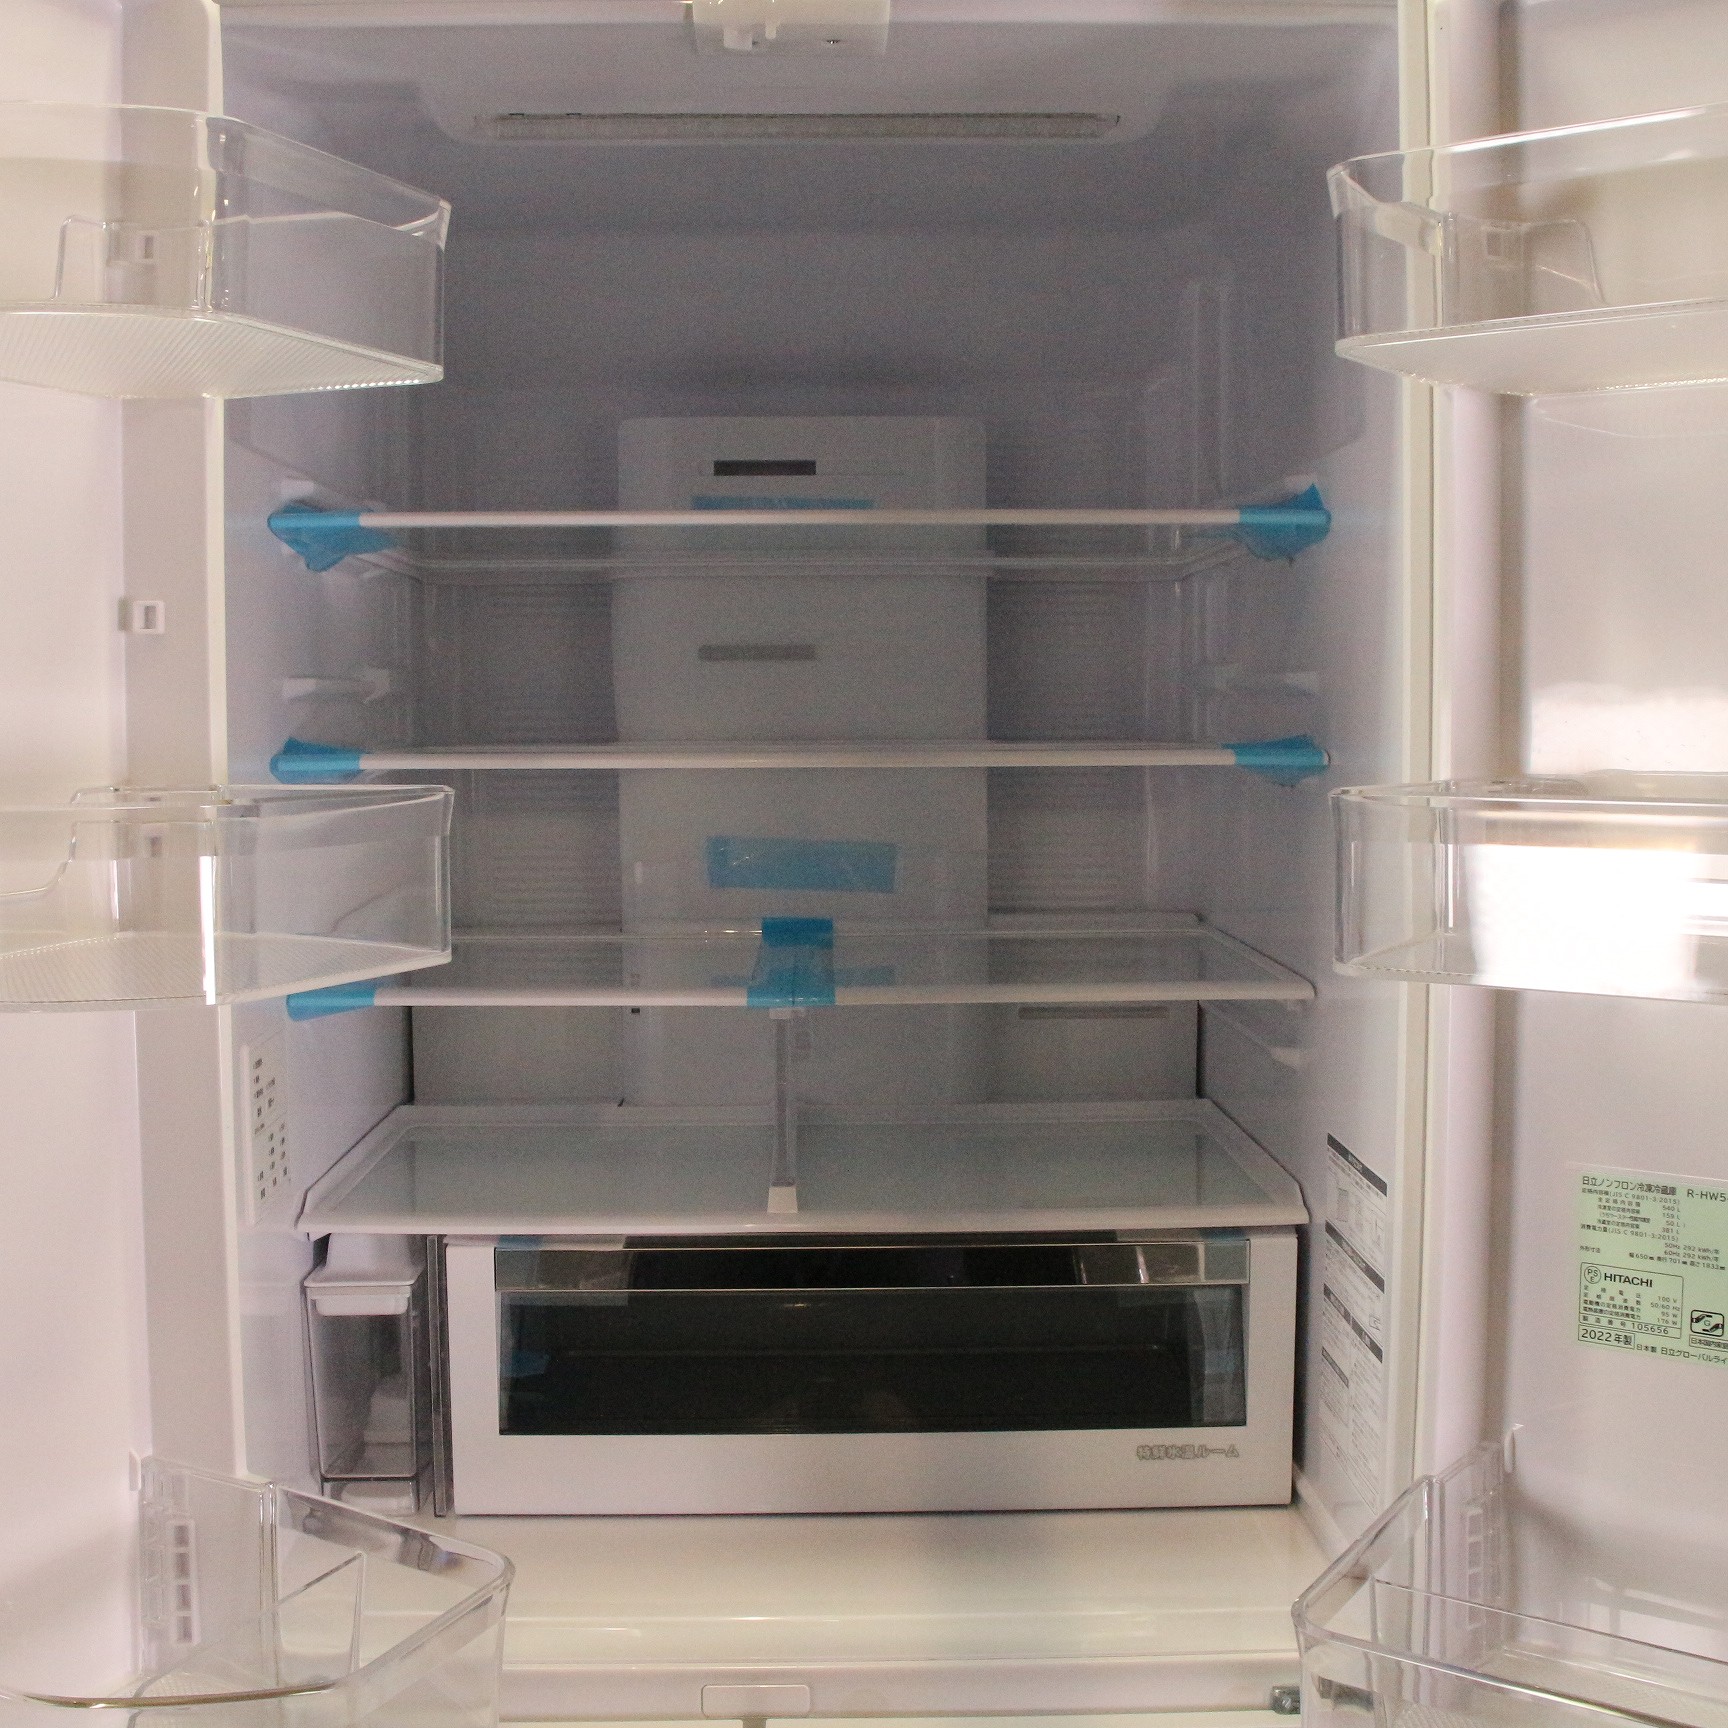 2022年製 日立 ノンフロン冷凍冷蔵庫 540L R-HW54S まるごとチルド 新鮮スリープ野菜室 - キッチン家電